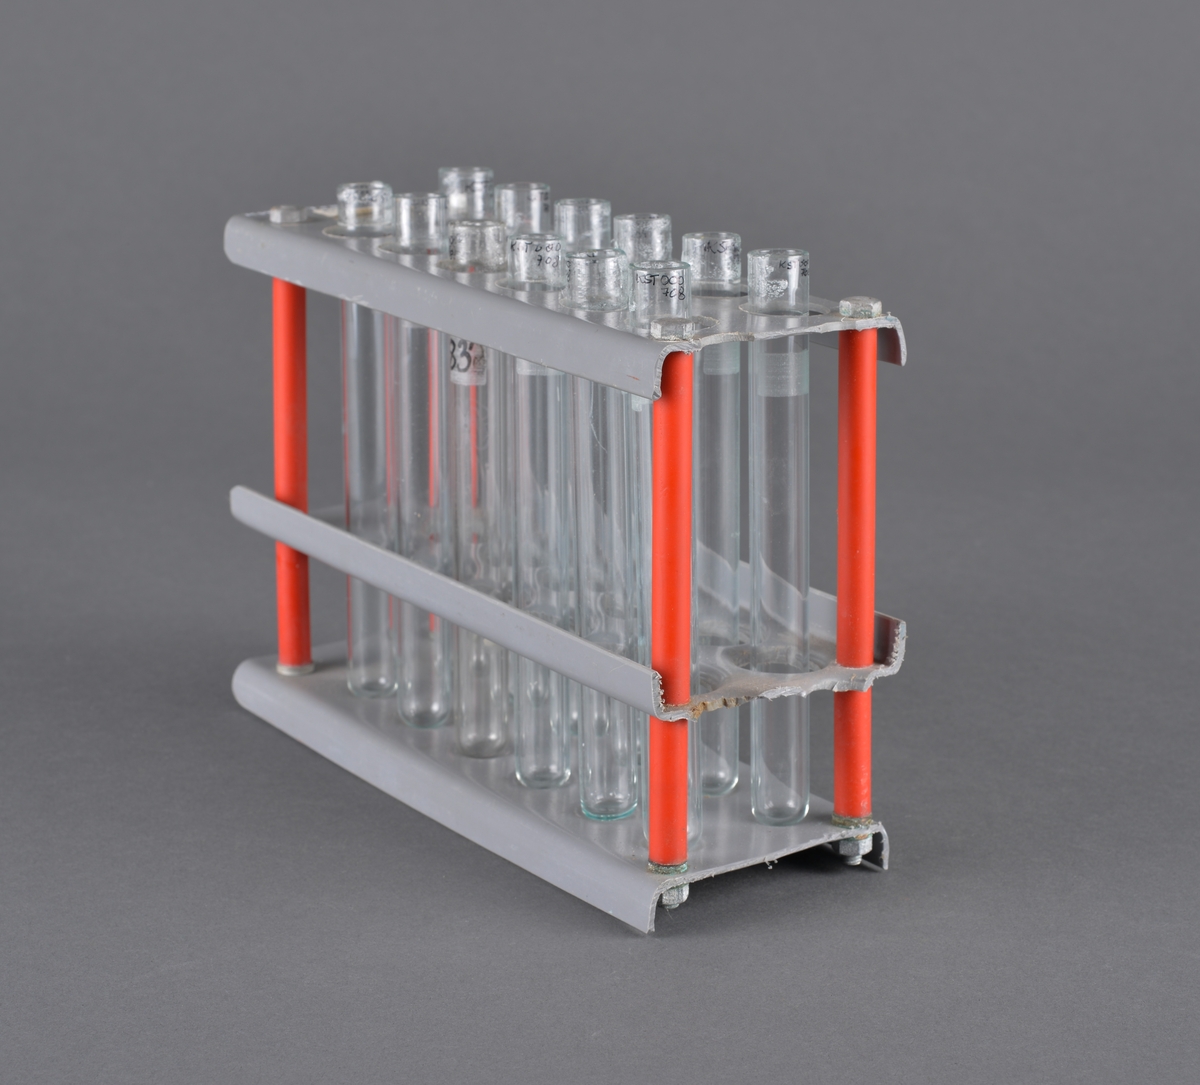 Reagensglass brukt ved laboratorium.
Stativ med 12 glass